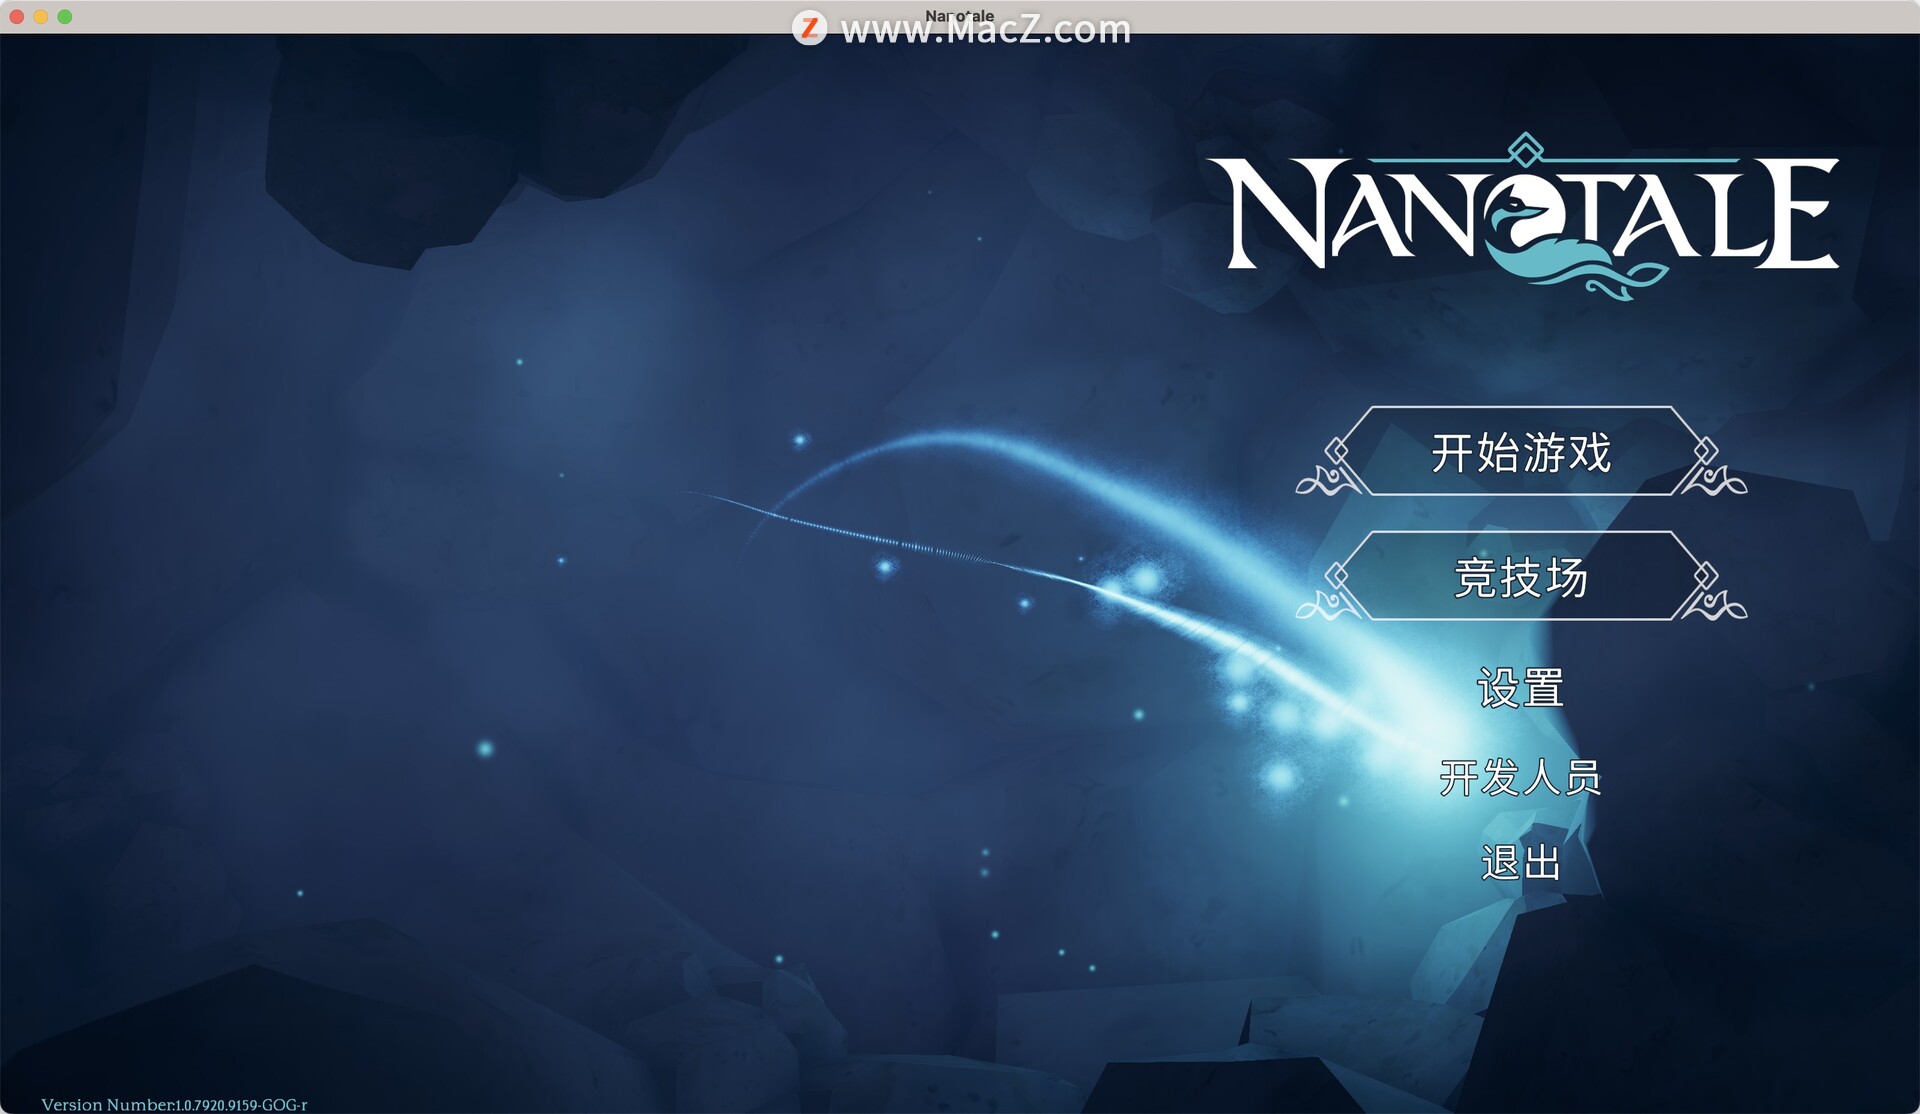 魔境奇缘文字大冒险 Nanotale Typing Chronicles  for Mac版(冒险打字游戏)